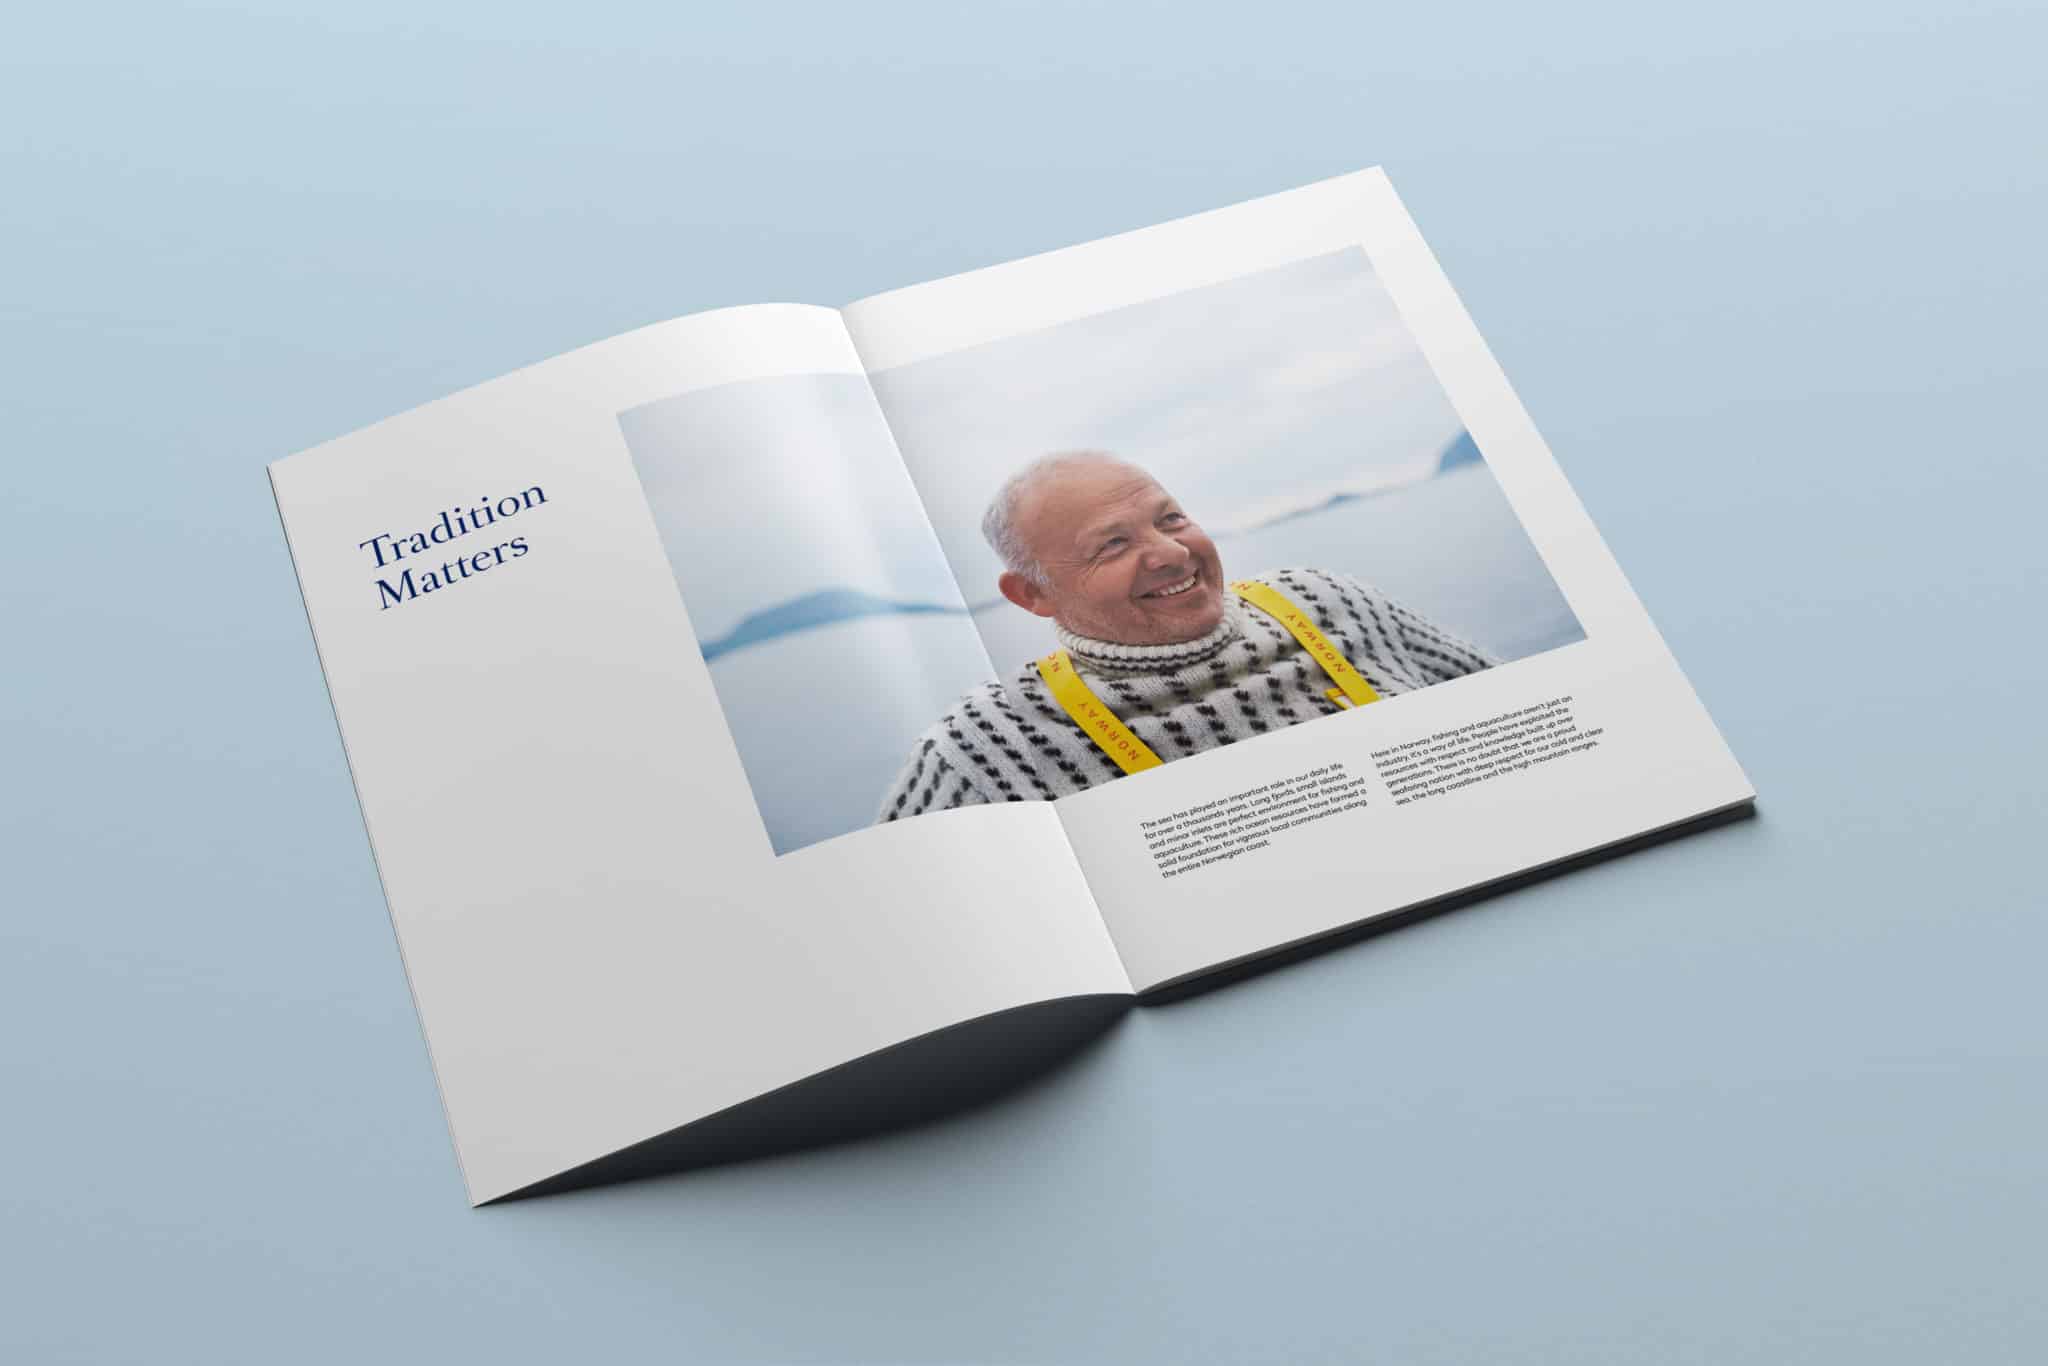 Foto av et brosjyreoppslag fra Seafood From Norway. På oppslaget står det "Tradition Matters" og det er foto av en smilene, middelaldrende mann ikledd islender genser med havet i bakgrunnen.